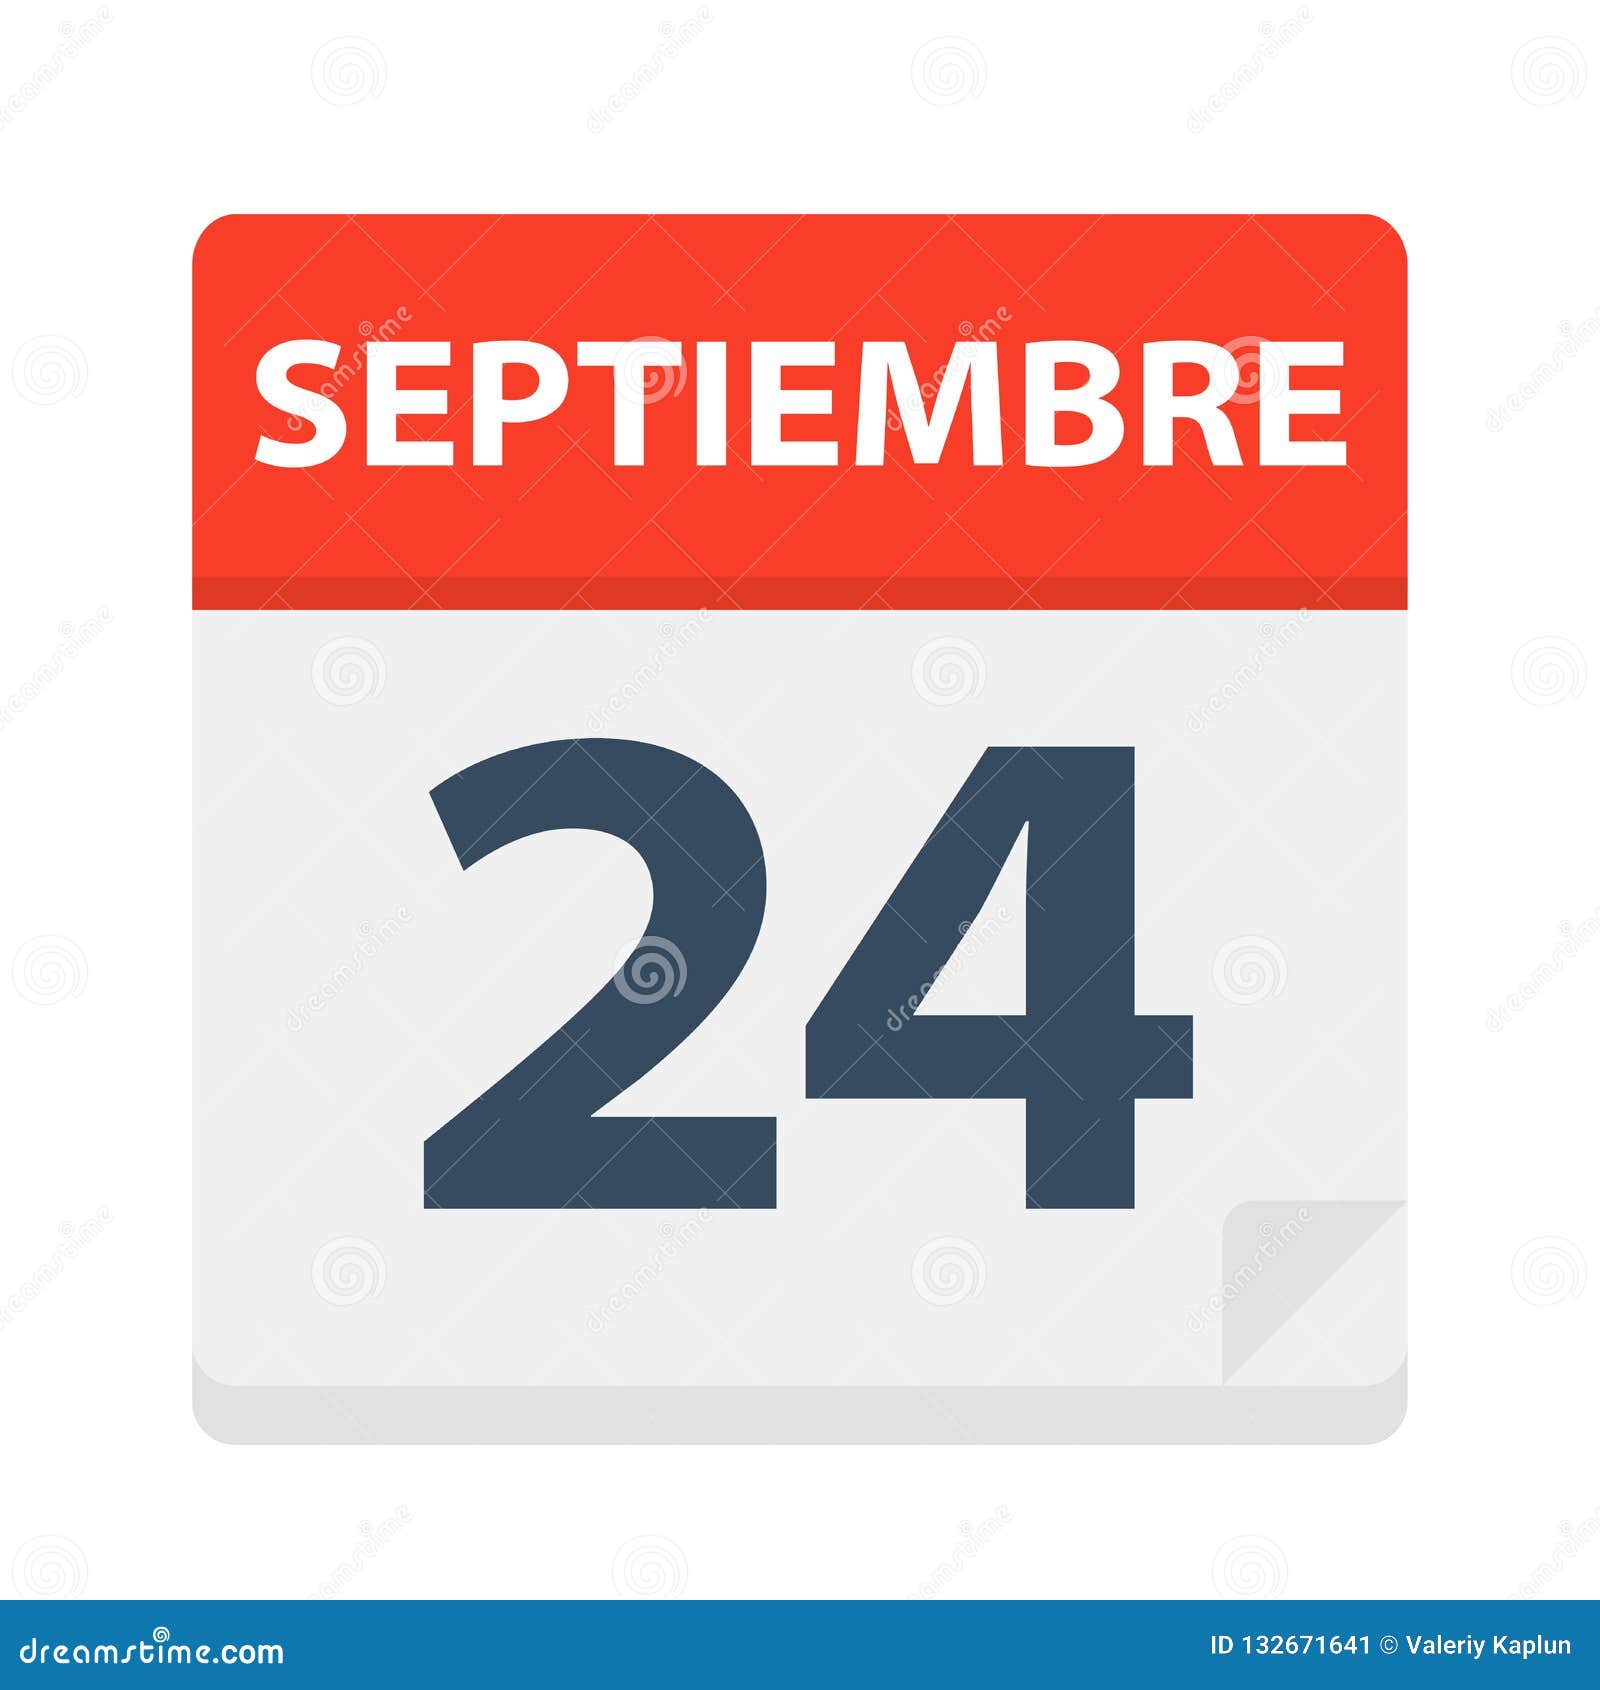 septiembre 24 - calendar icon - september 24.   of spanish calendar leaf